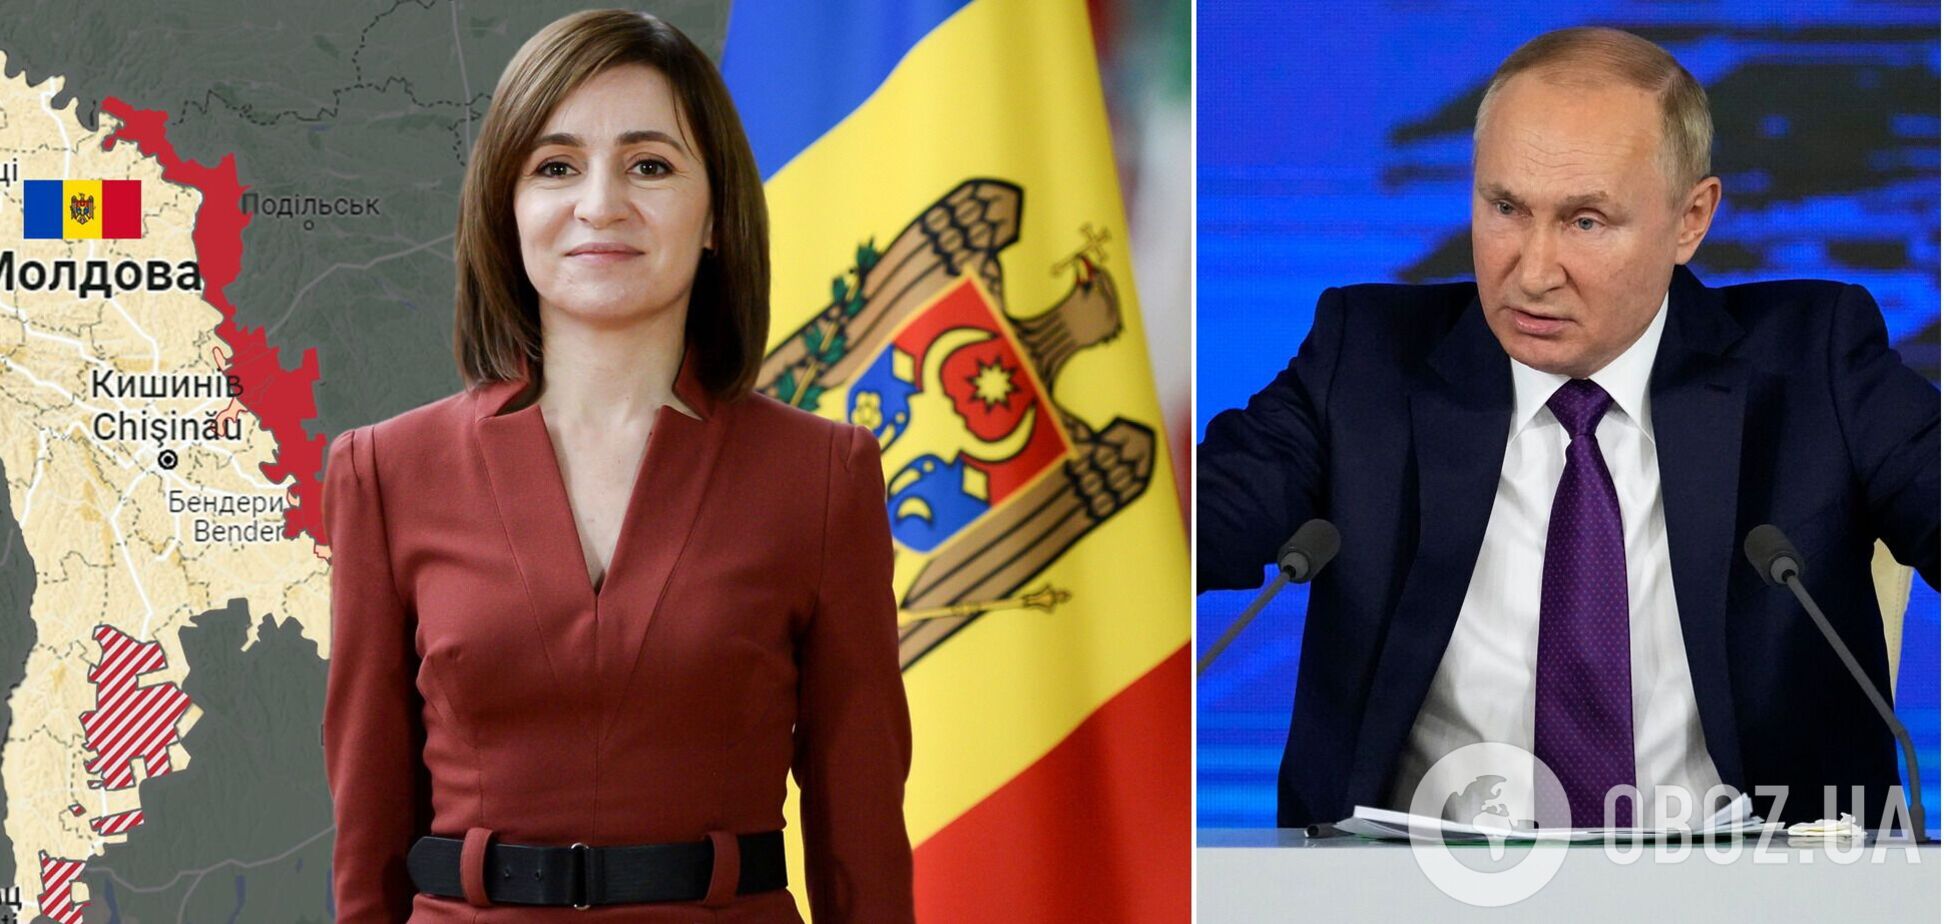 Як у Молдові може бути розіграний гібридний сценарій повалення влади